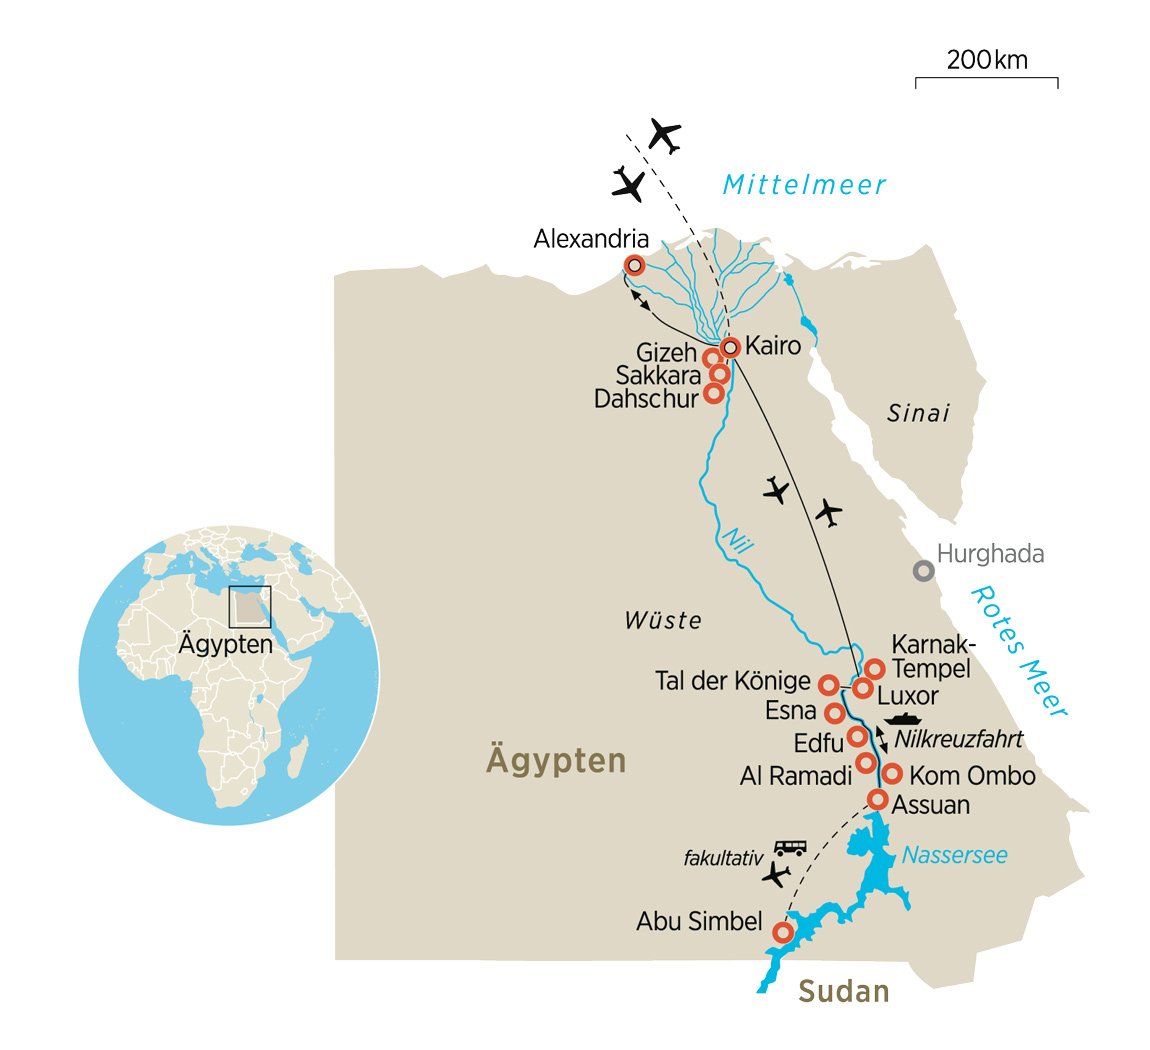 Agypten Pyramiden Papyrus Und Hieroglyphen Am Nil Zeit Reisen